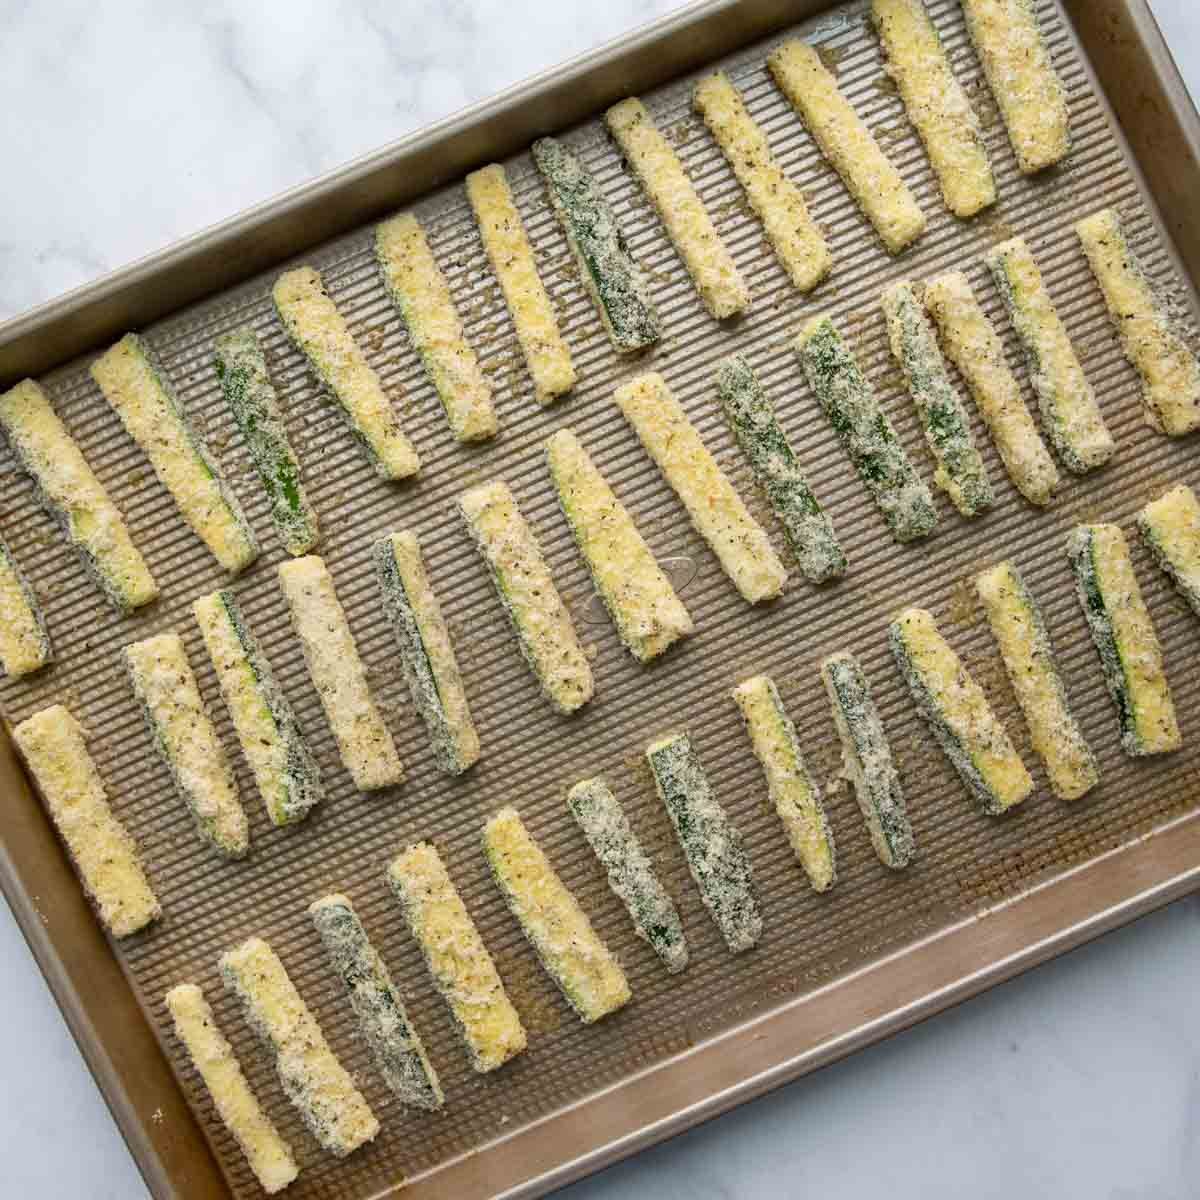 unbaked zucchini sticks on a baking sheet.